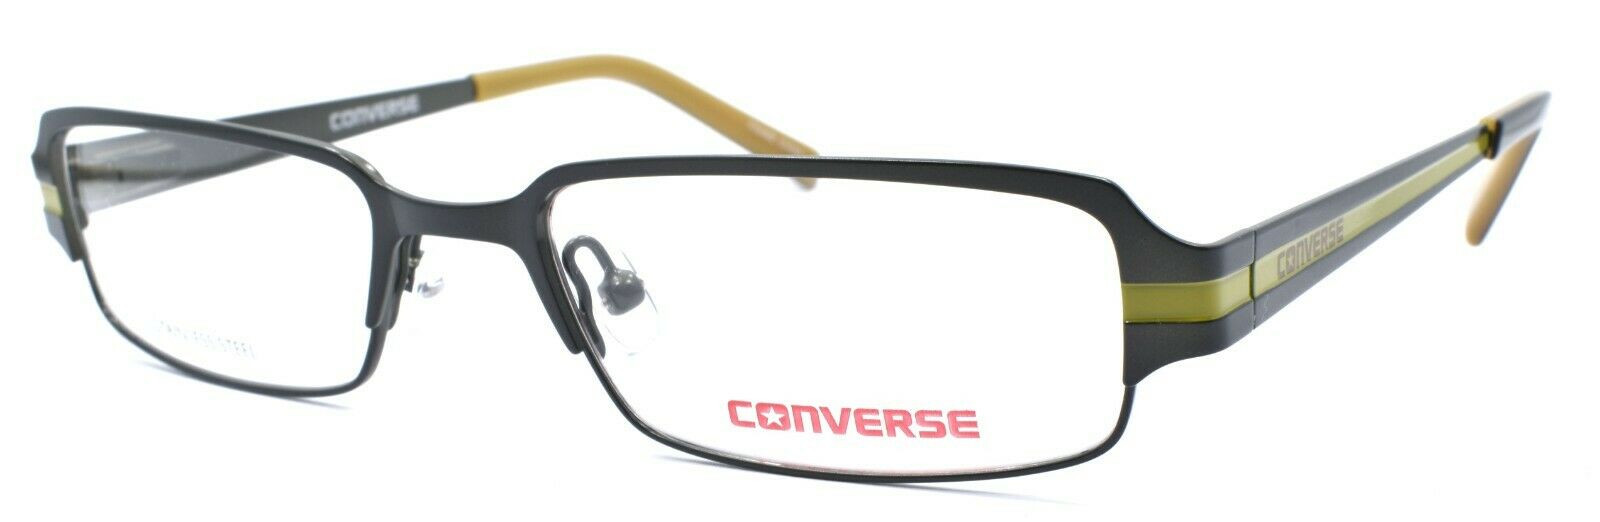 1-CONVERSE I Don't Know Kids Eyeglasses Frames 49-17-135 Olive Green + CASE-751286227031-IKSpecs